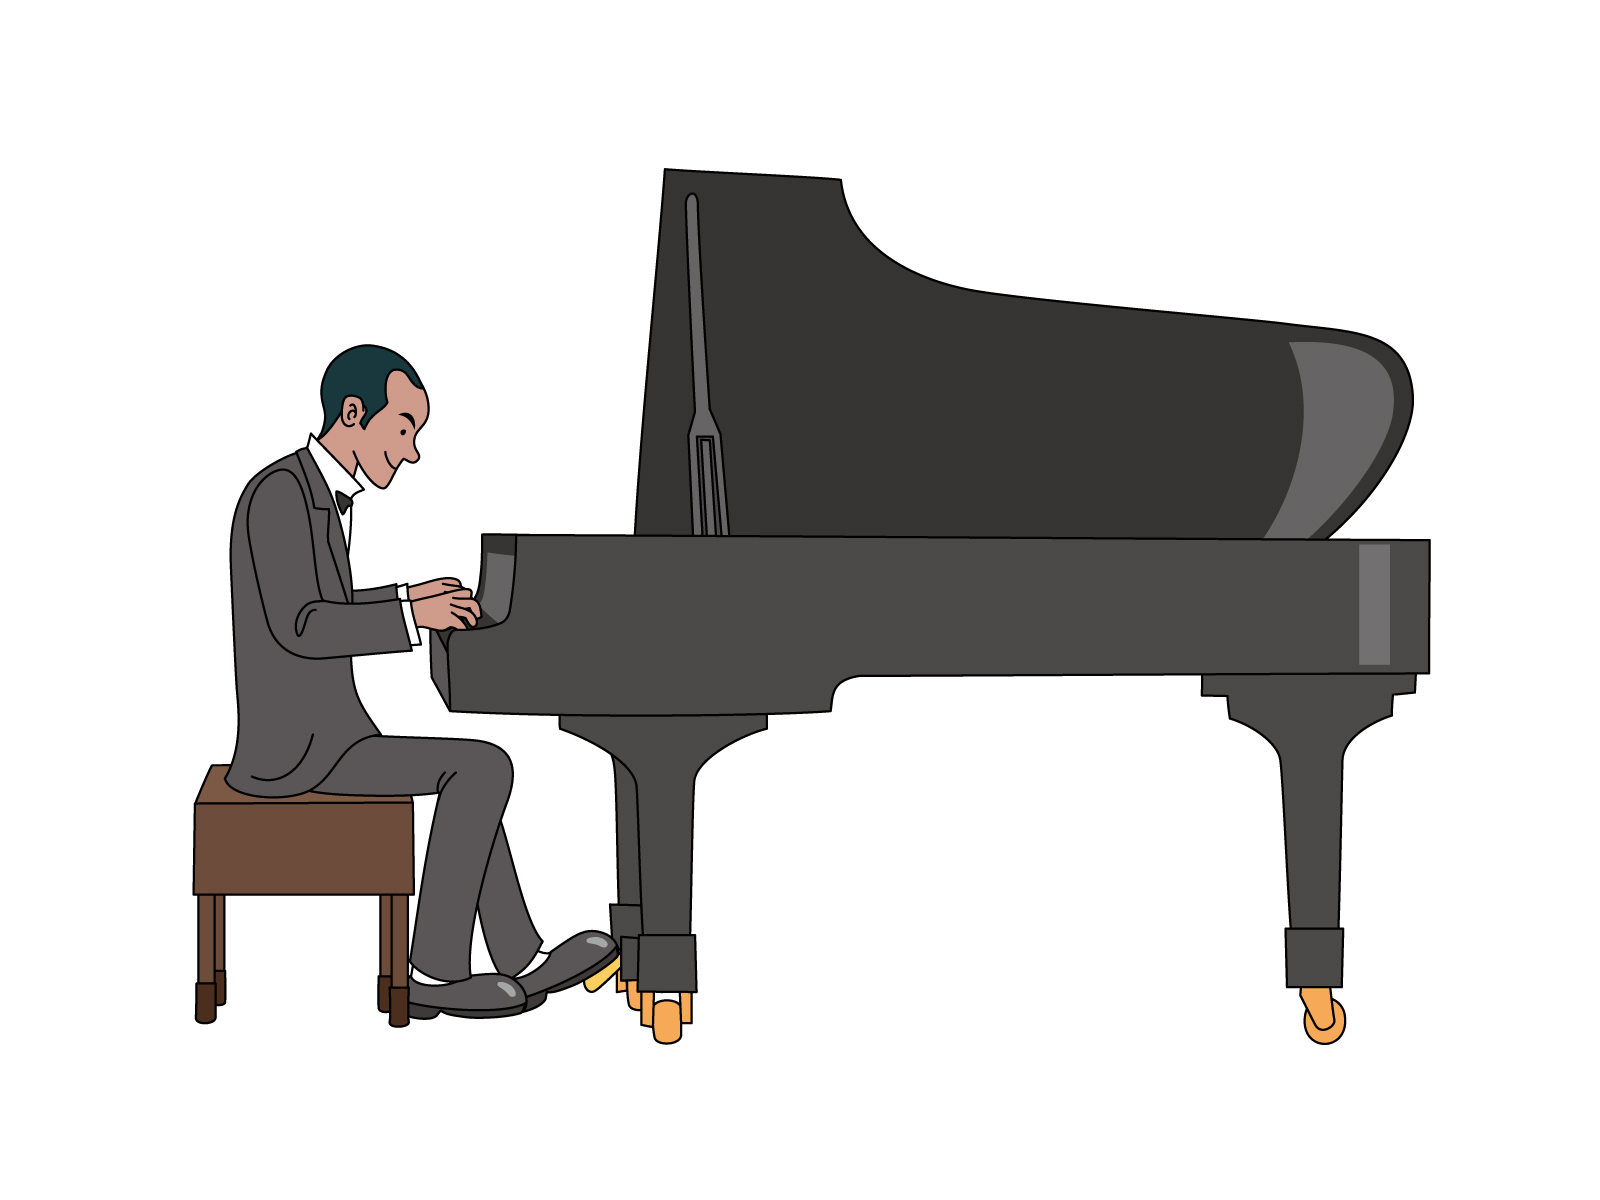 ピアノを弾く男性